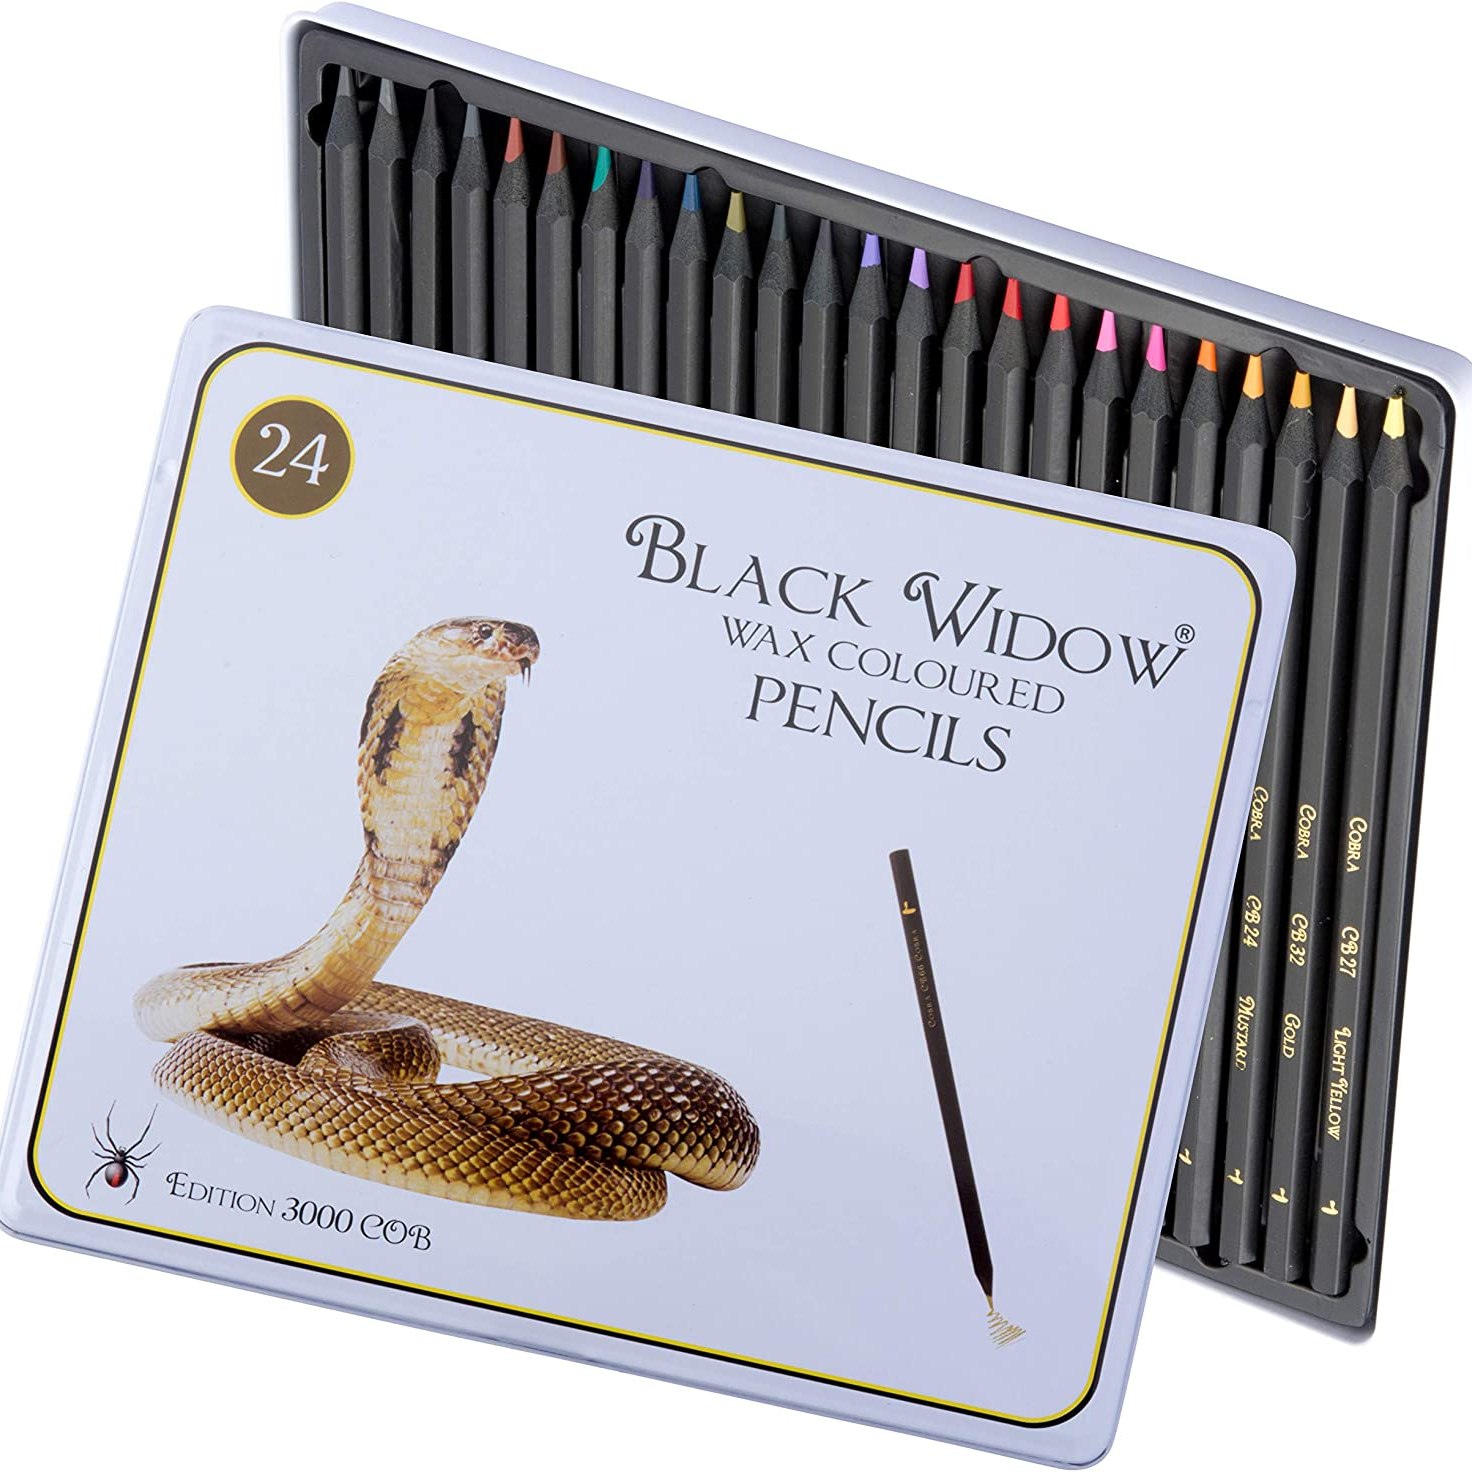 Black Widow Pencils